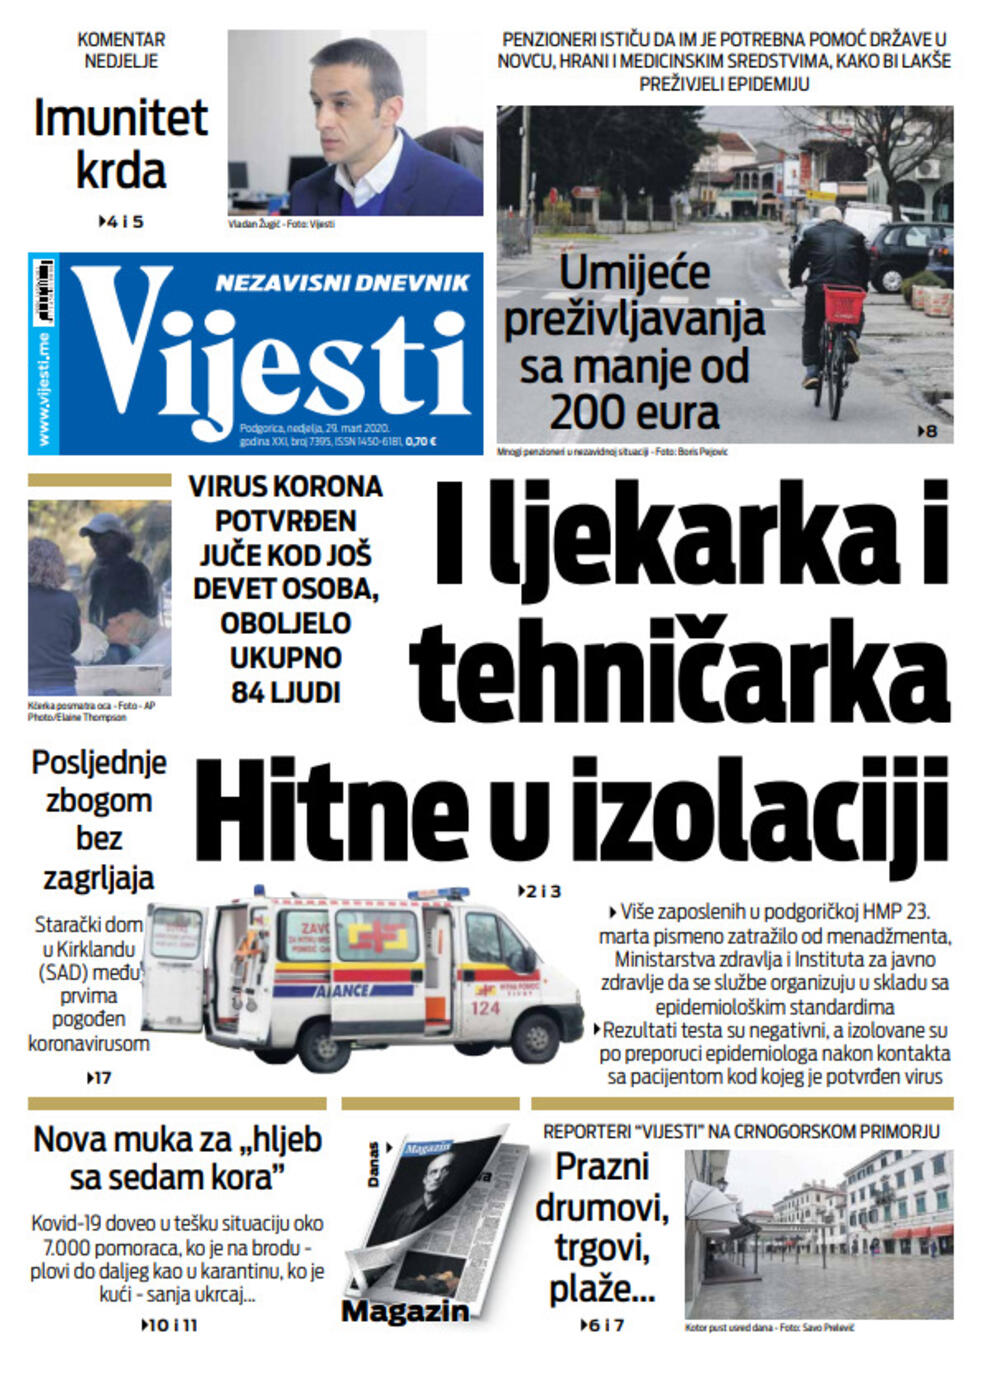 Naslovna strana "Vijesti" za 29.3.2020., Foto: Vijesti